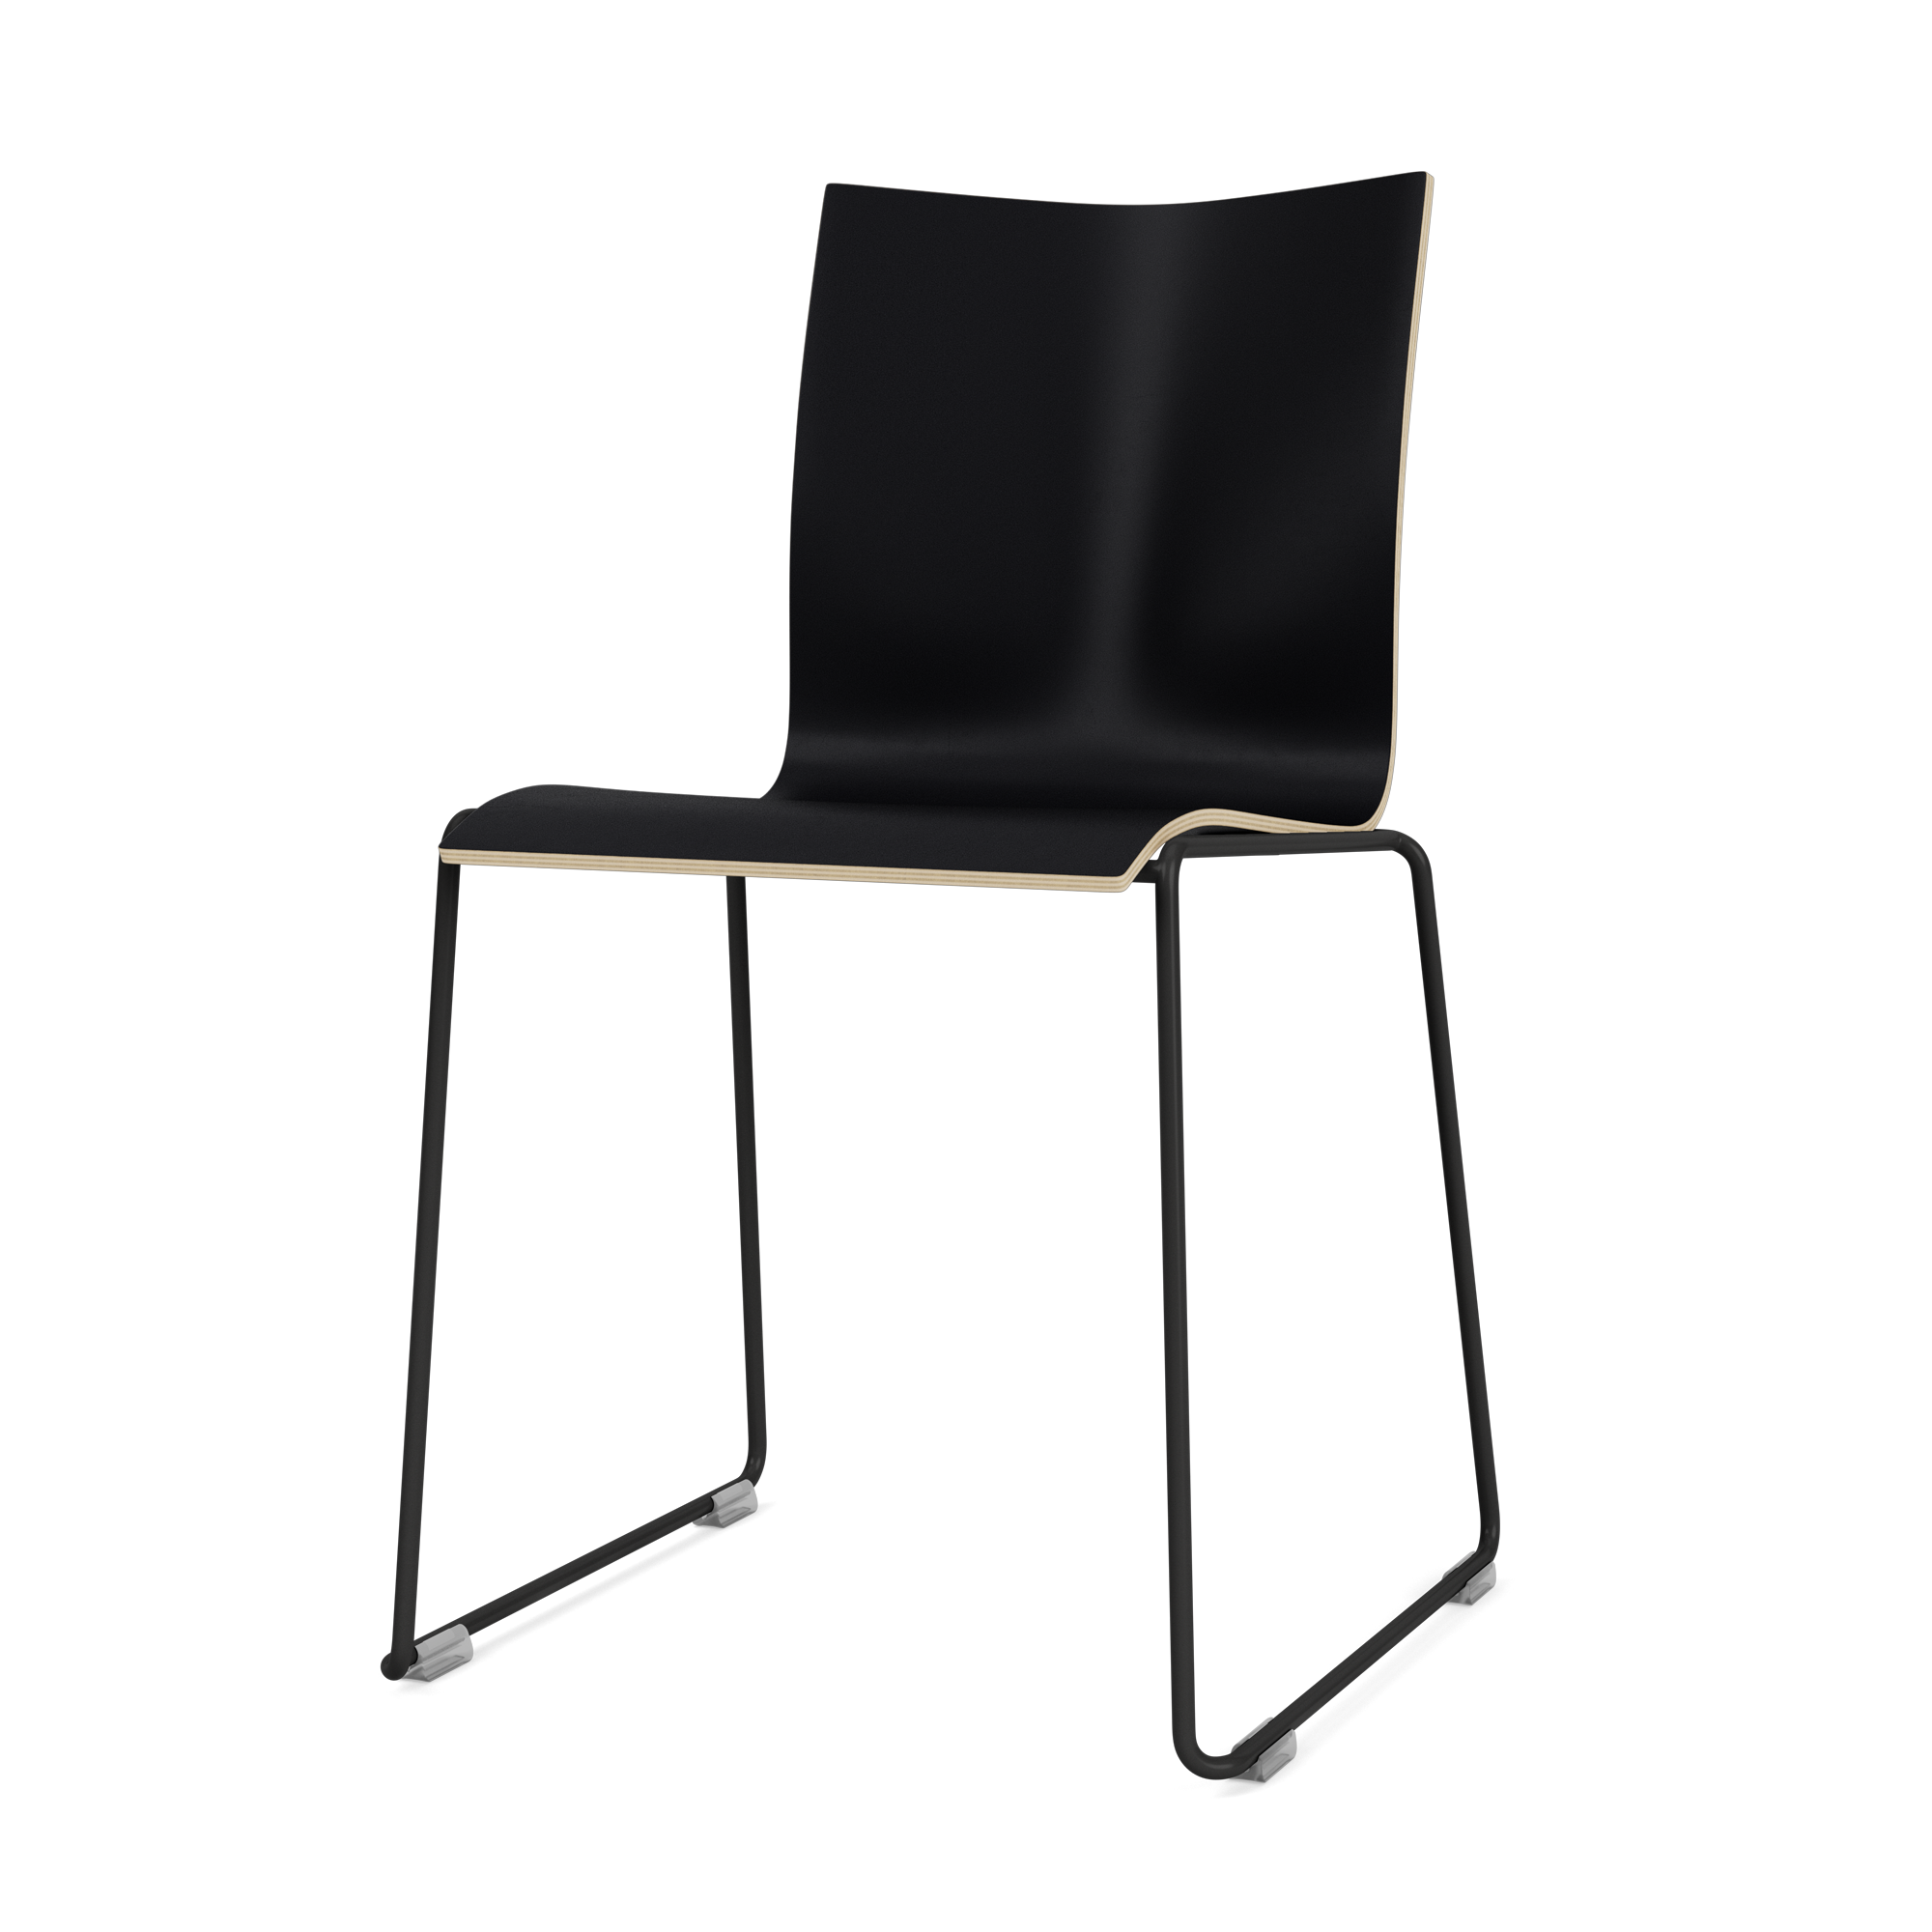 Chairik 107 - Chair | Montana Furniture